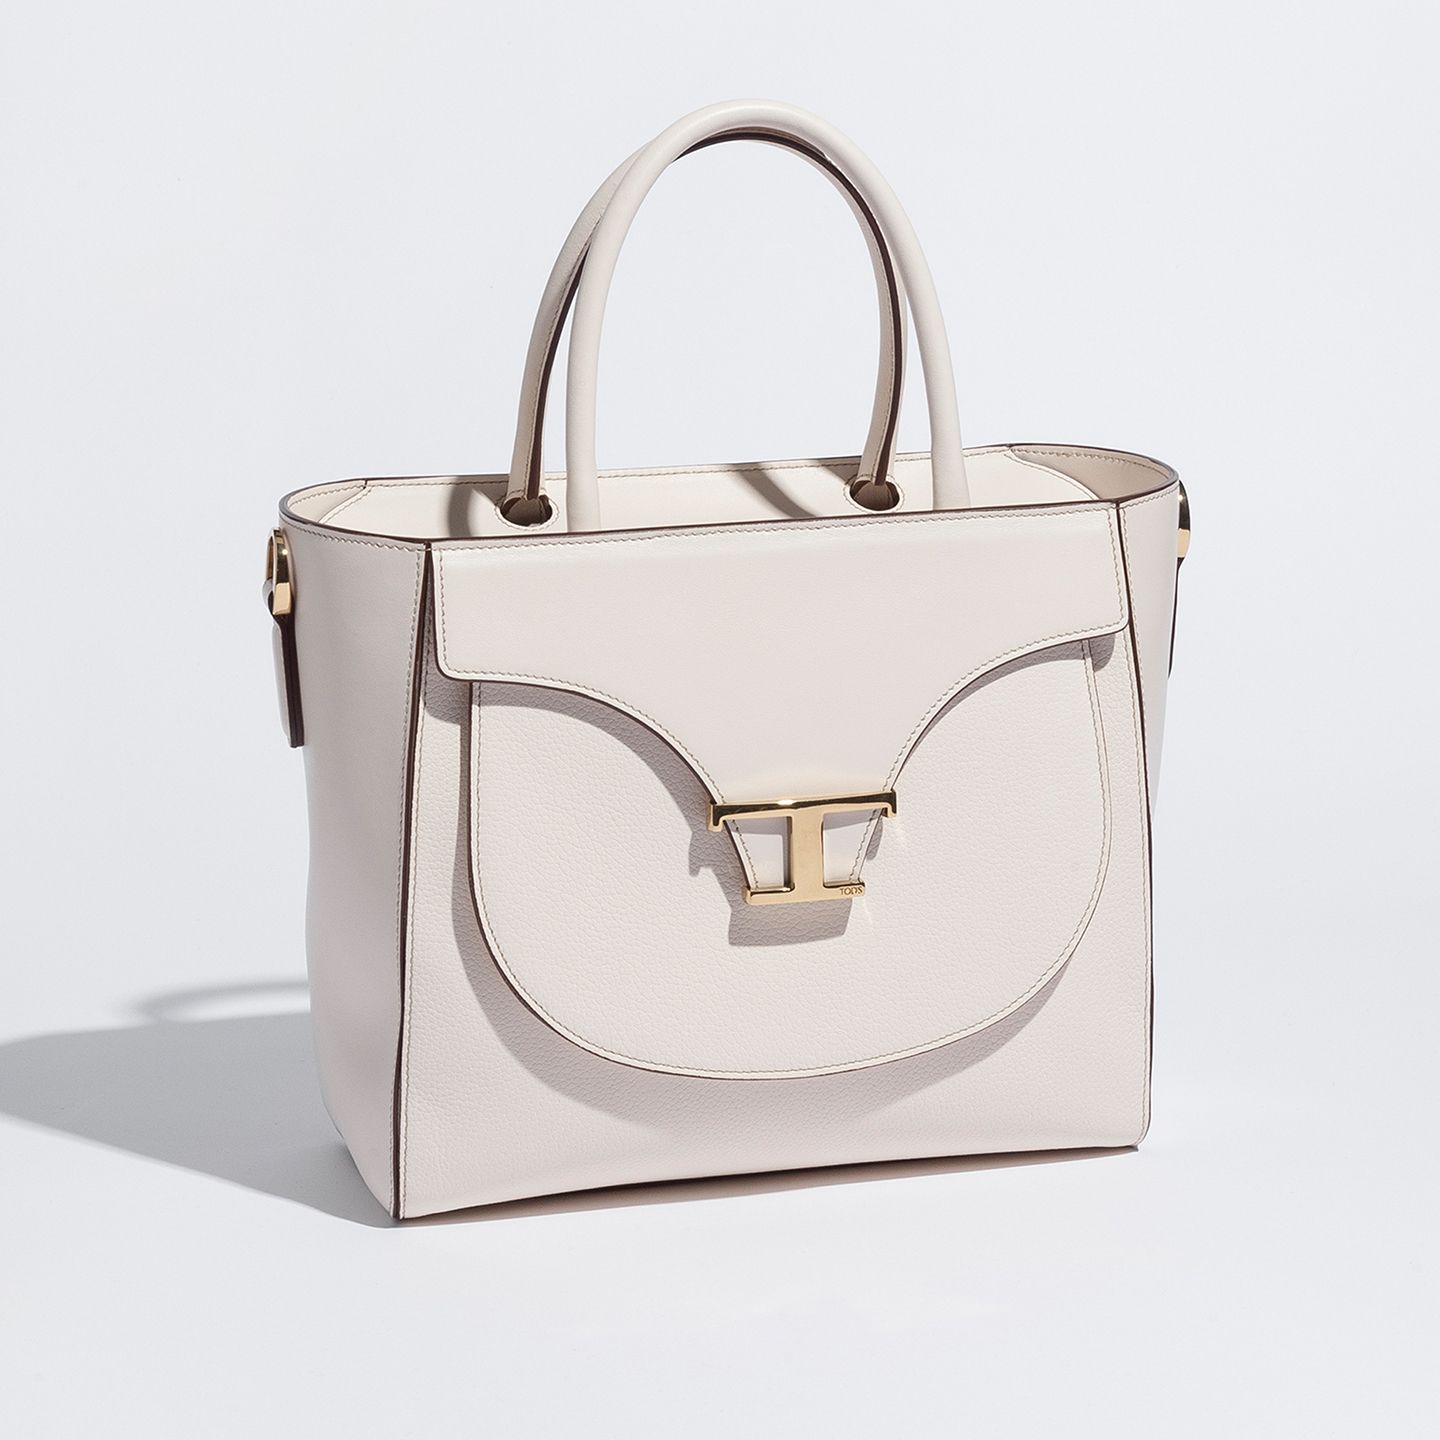 トッズのイニシャルロゴが映えるバッグは、は端正なフォルムとリッチな金具使いが魅力。